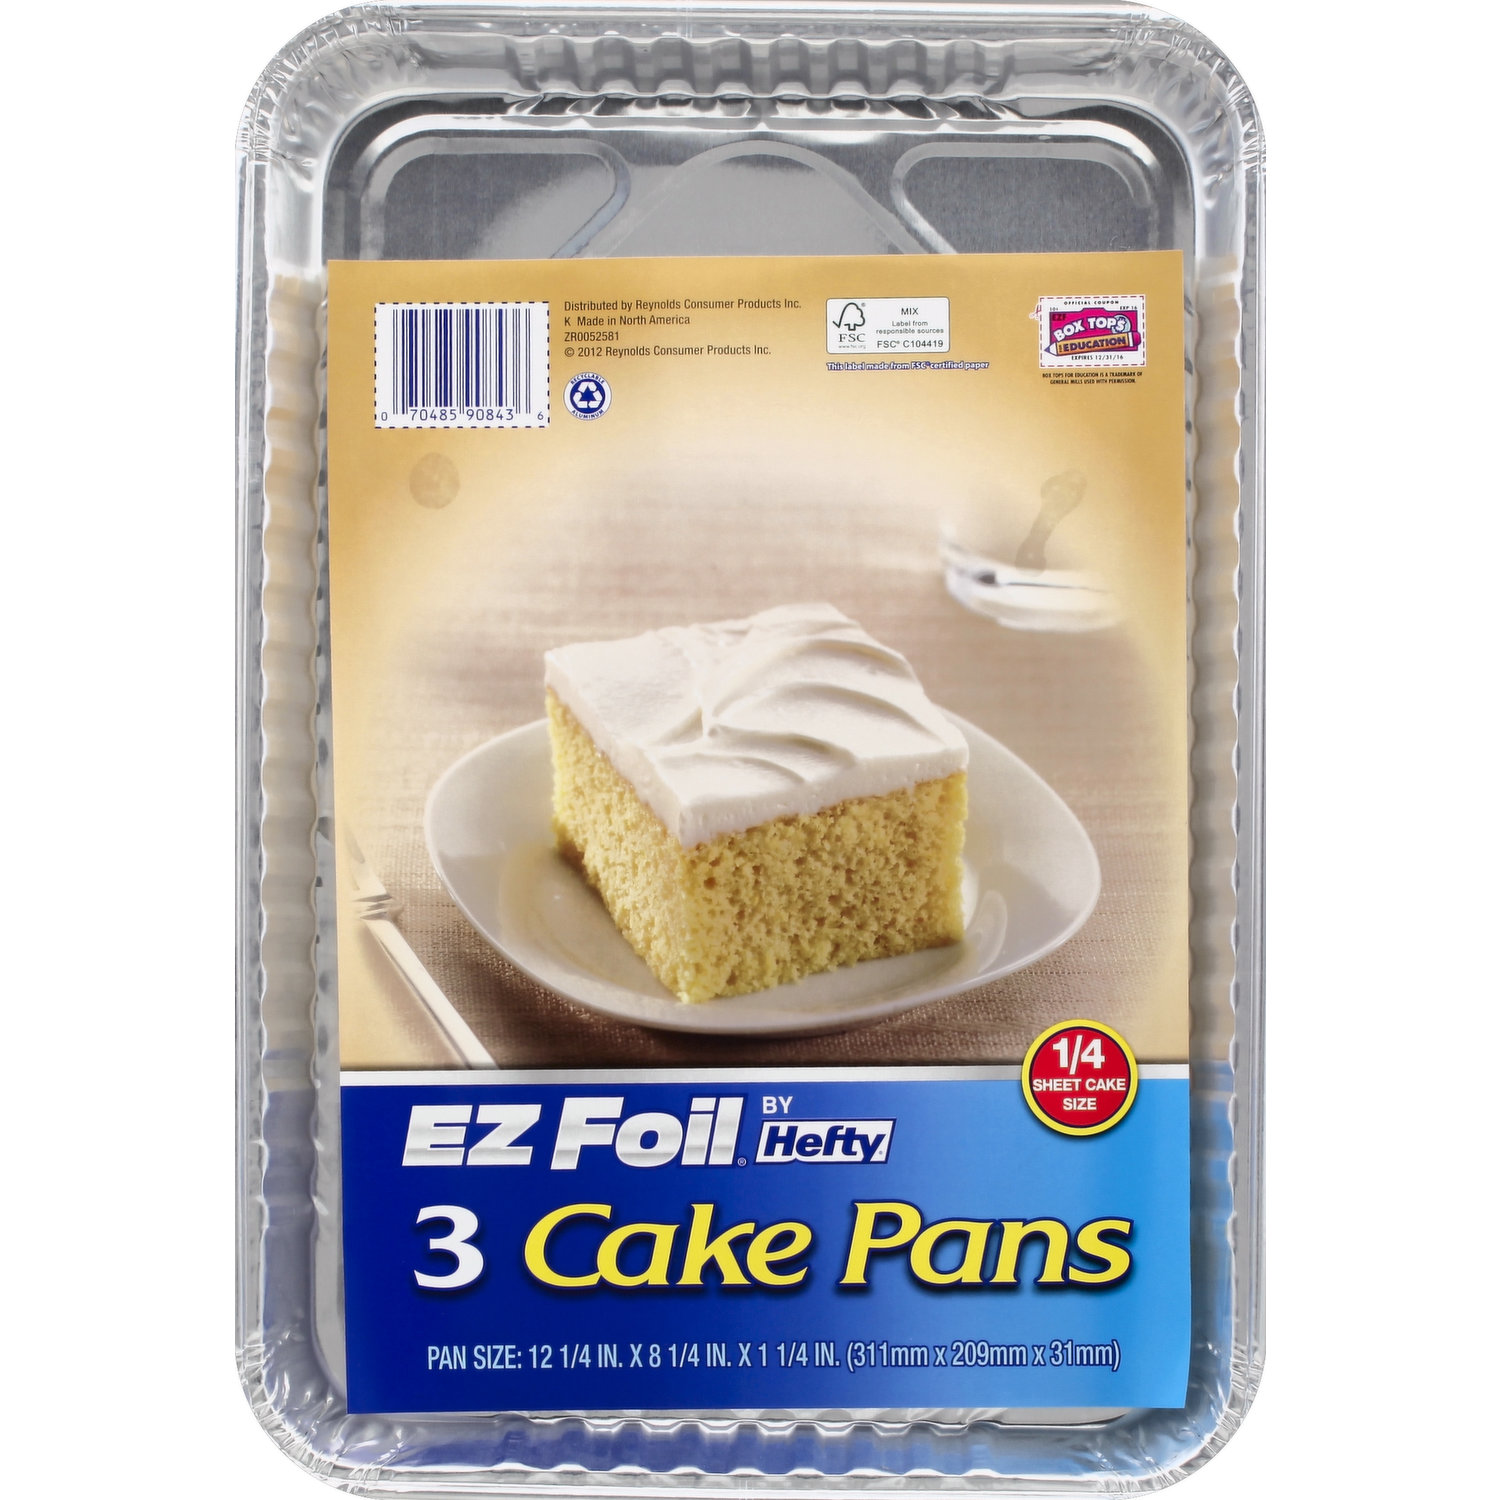 EZ Foil Cake Pans, with Lids, 8 X 8